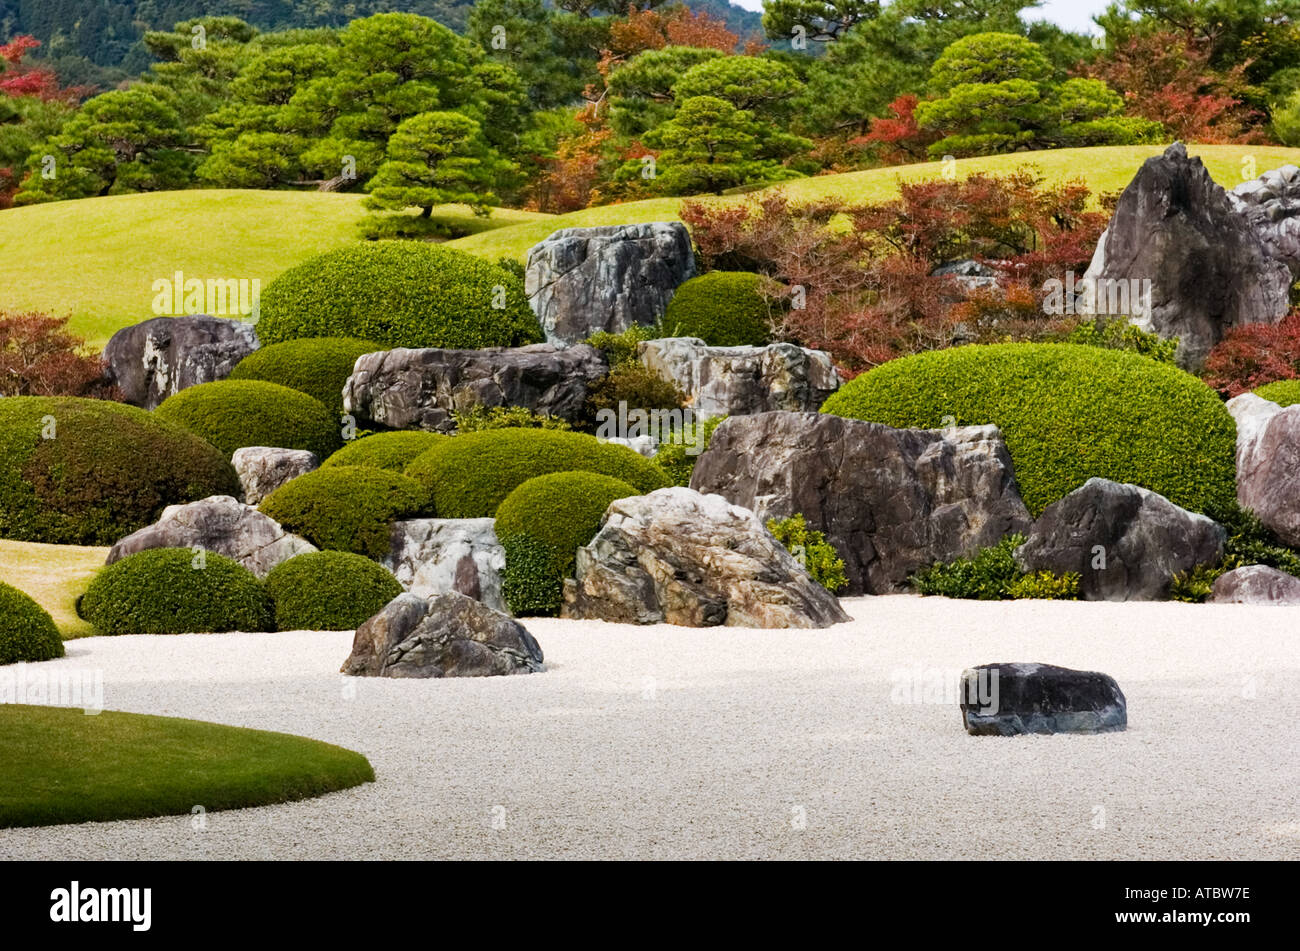 Dettaglio del paesaggio secco giardino alla famosa Adachi Museo di Arte in Giappone Foto Stock